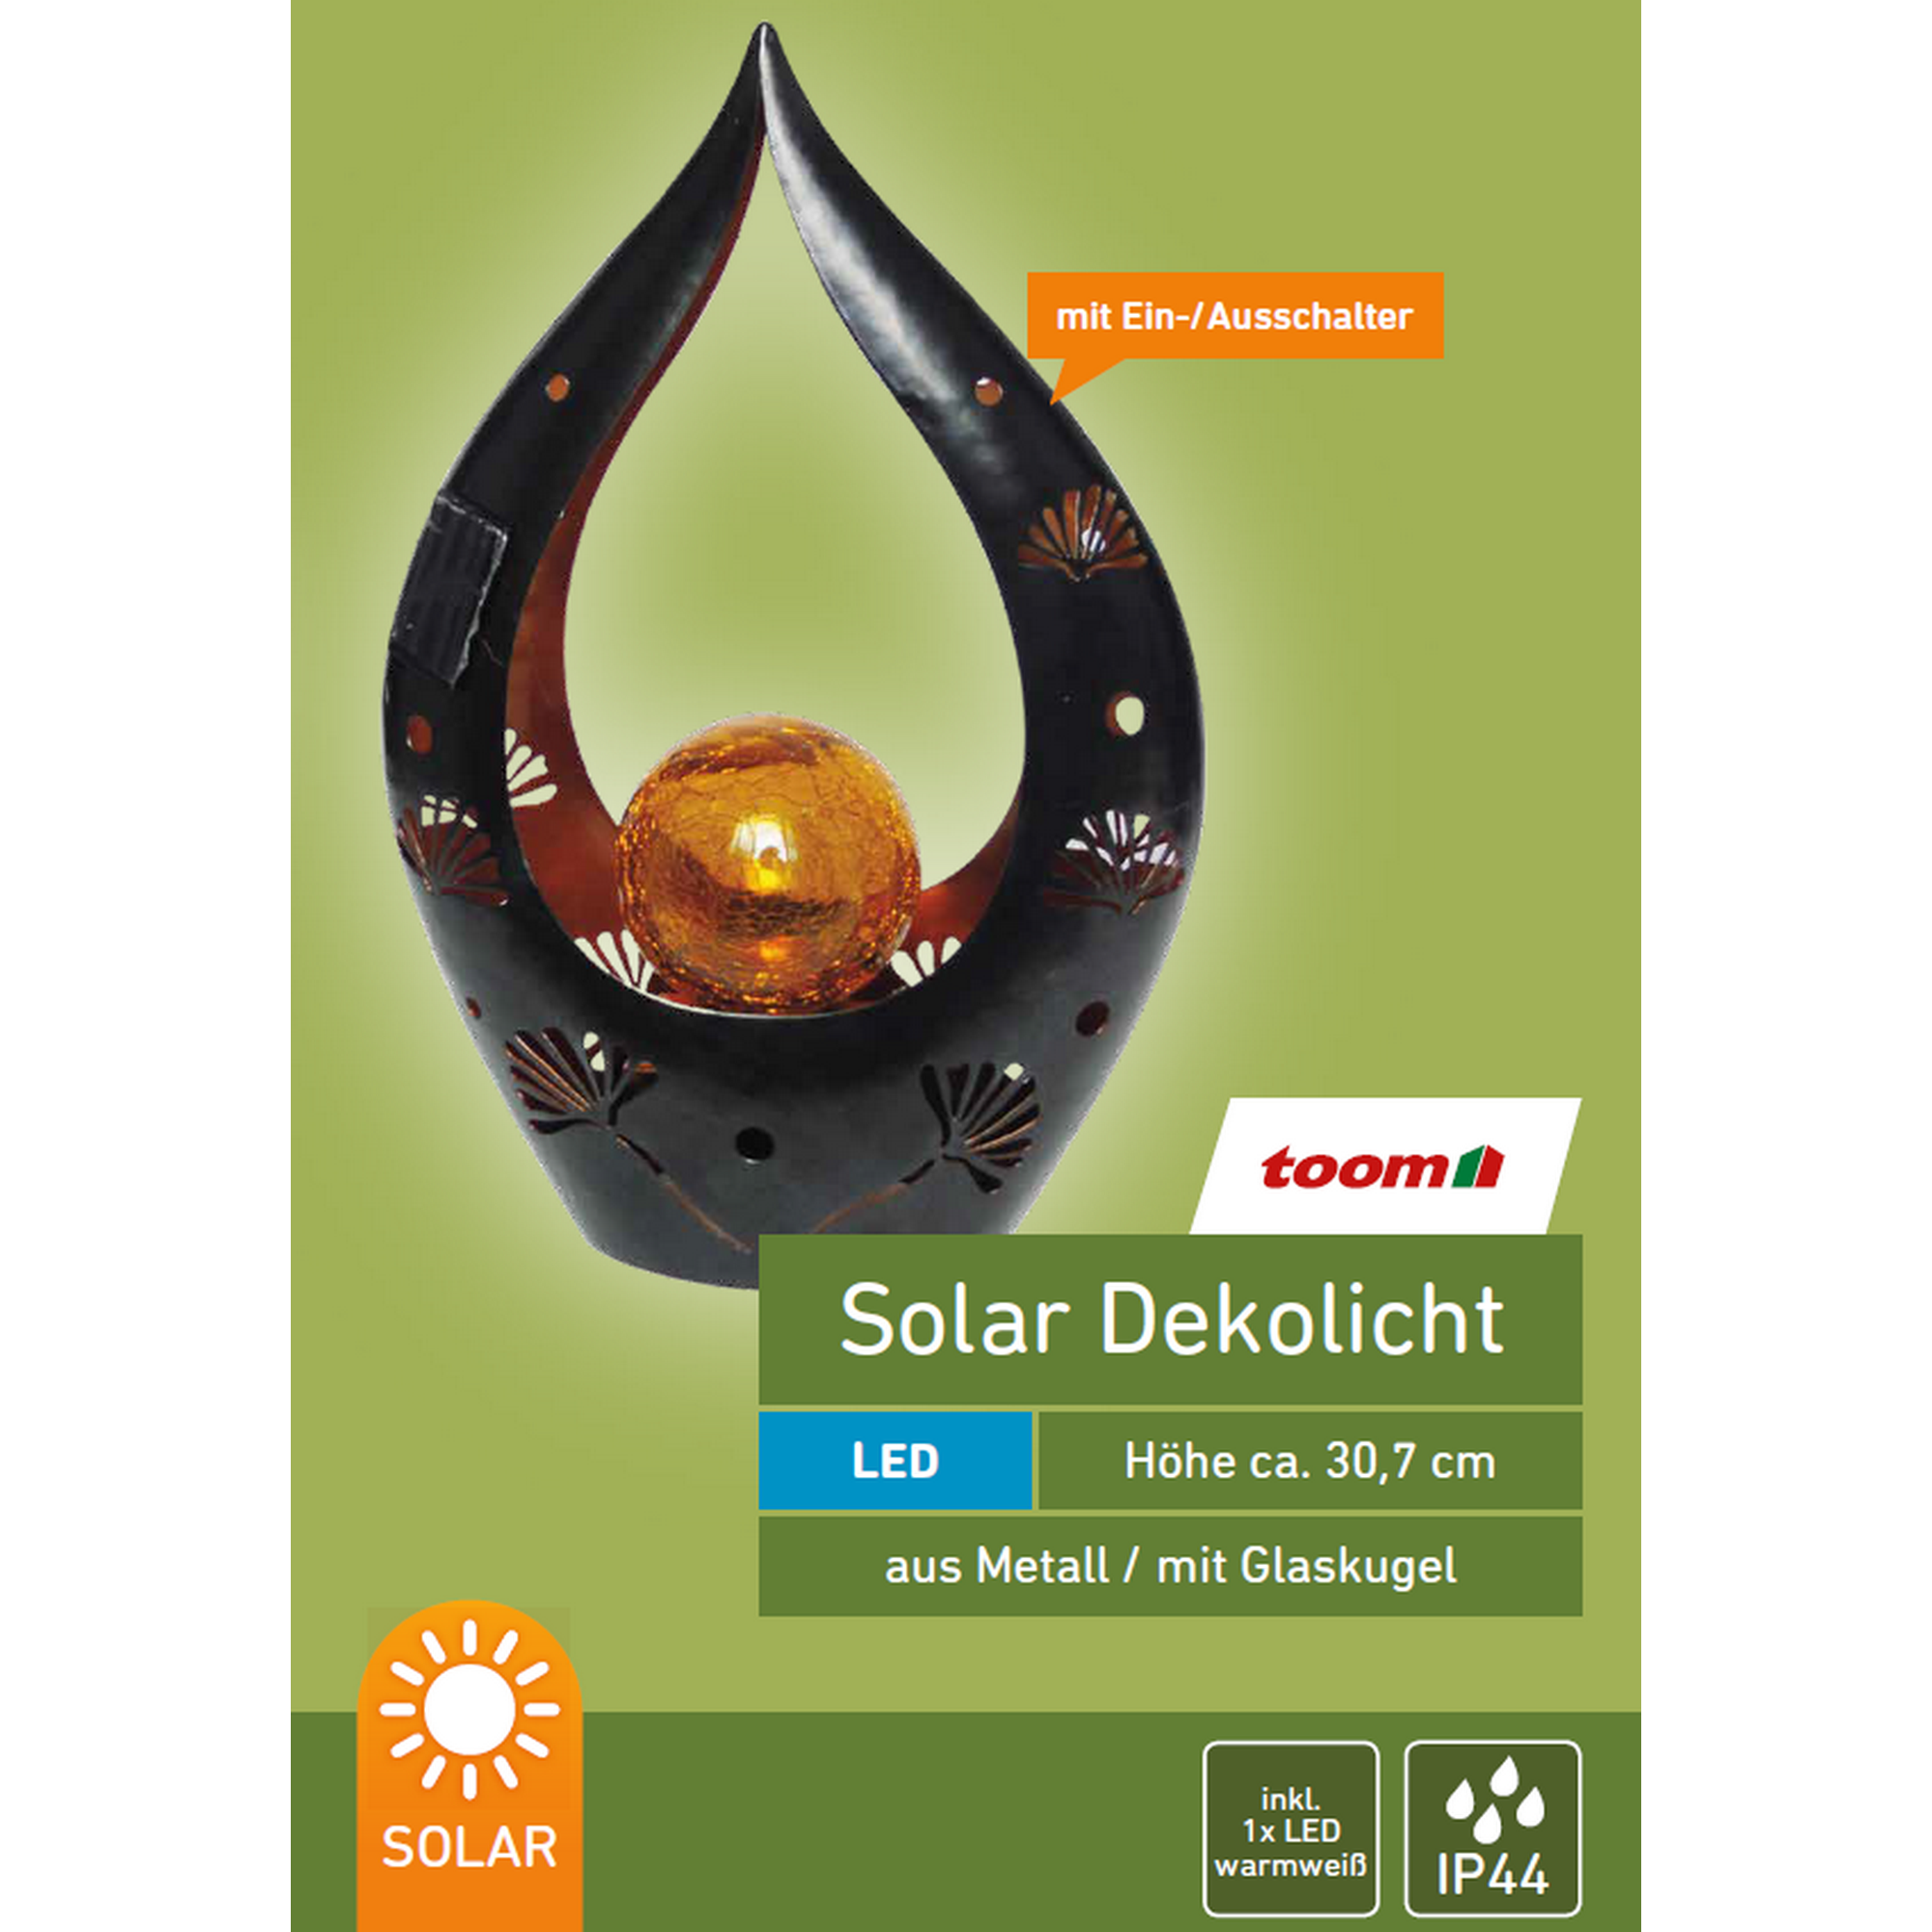 Solar-Dekoleuchte 'Blüte' anthrazit/gold 20,8 x 30,7 cm + product picture